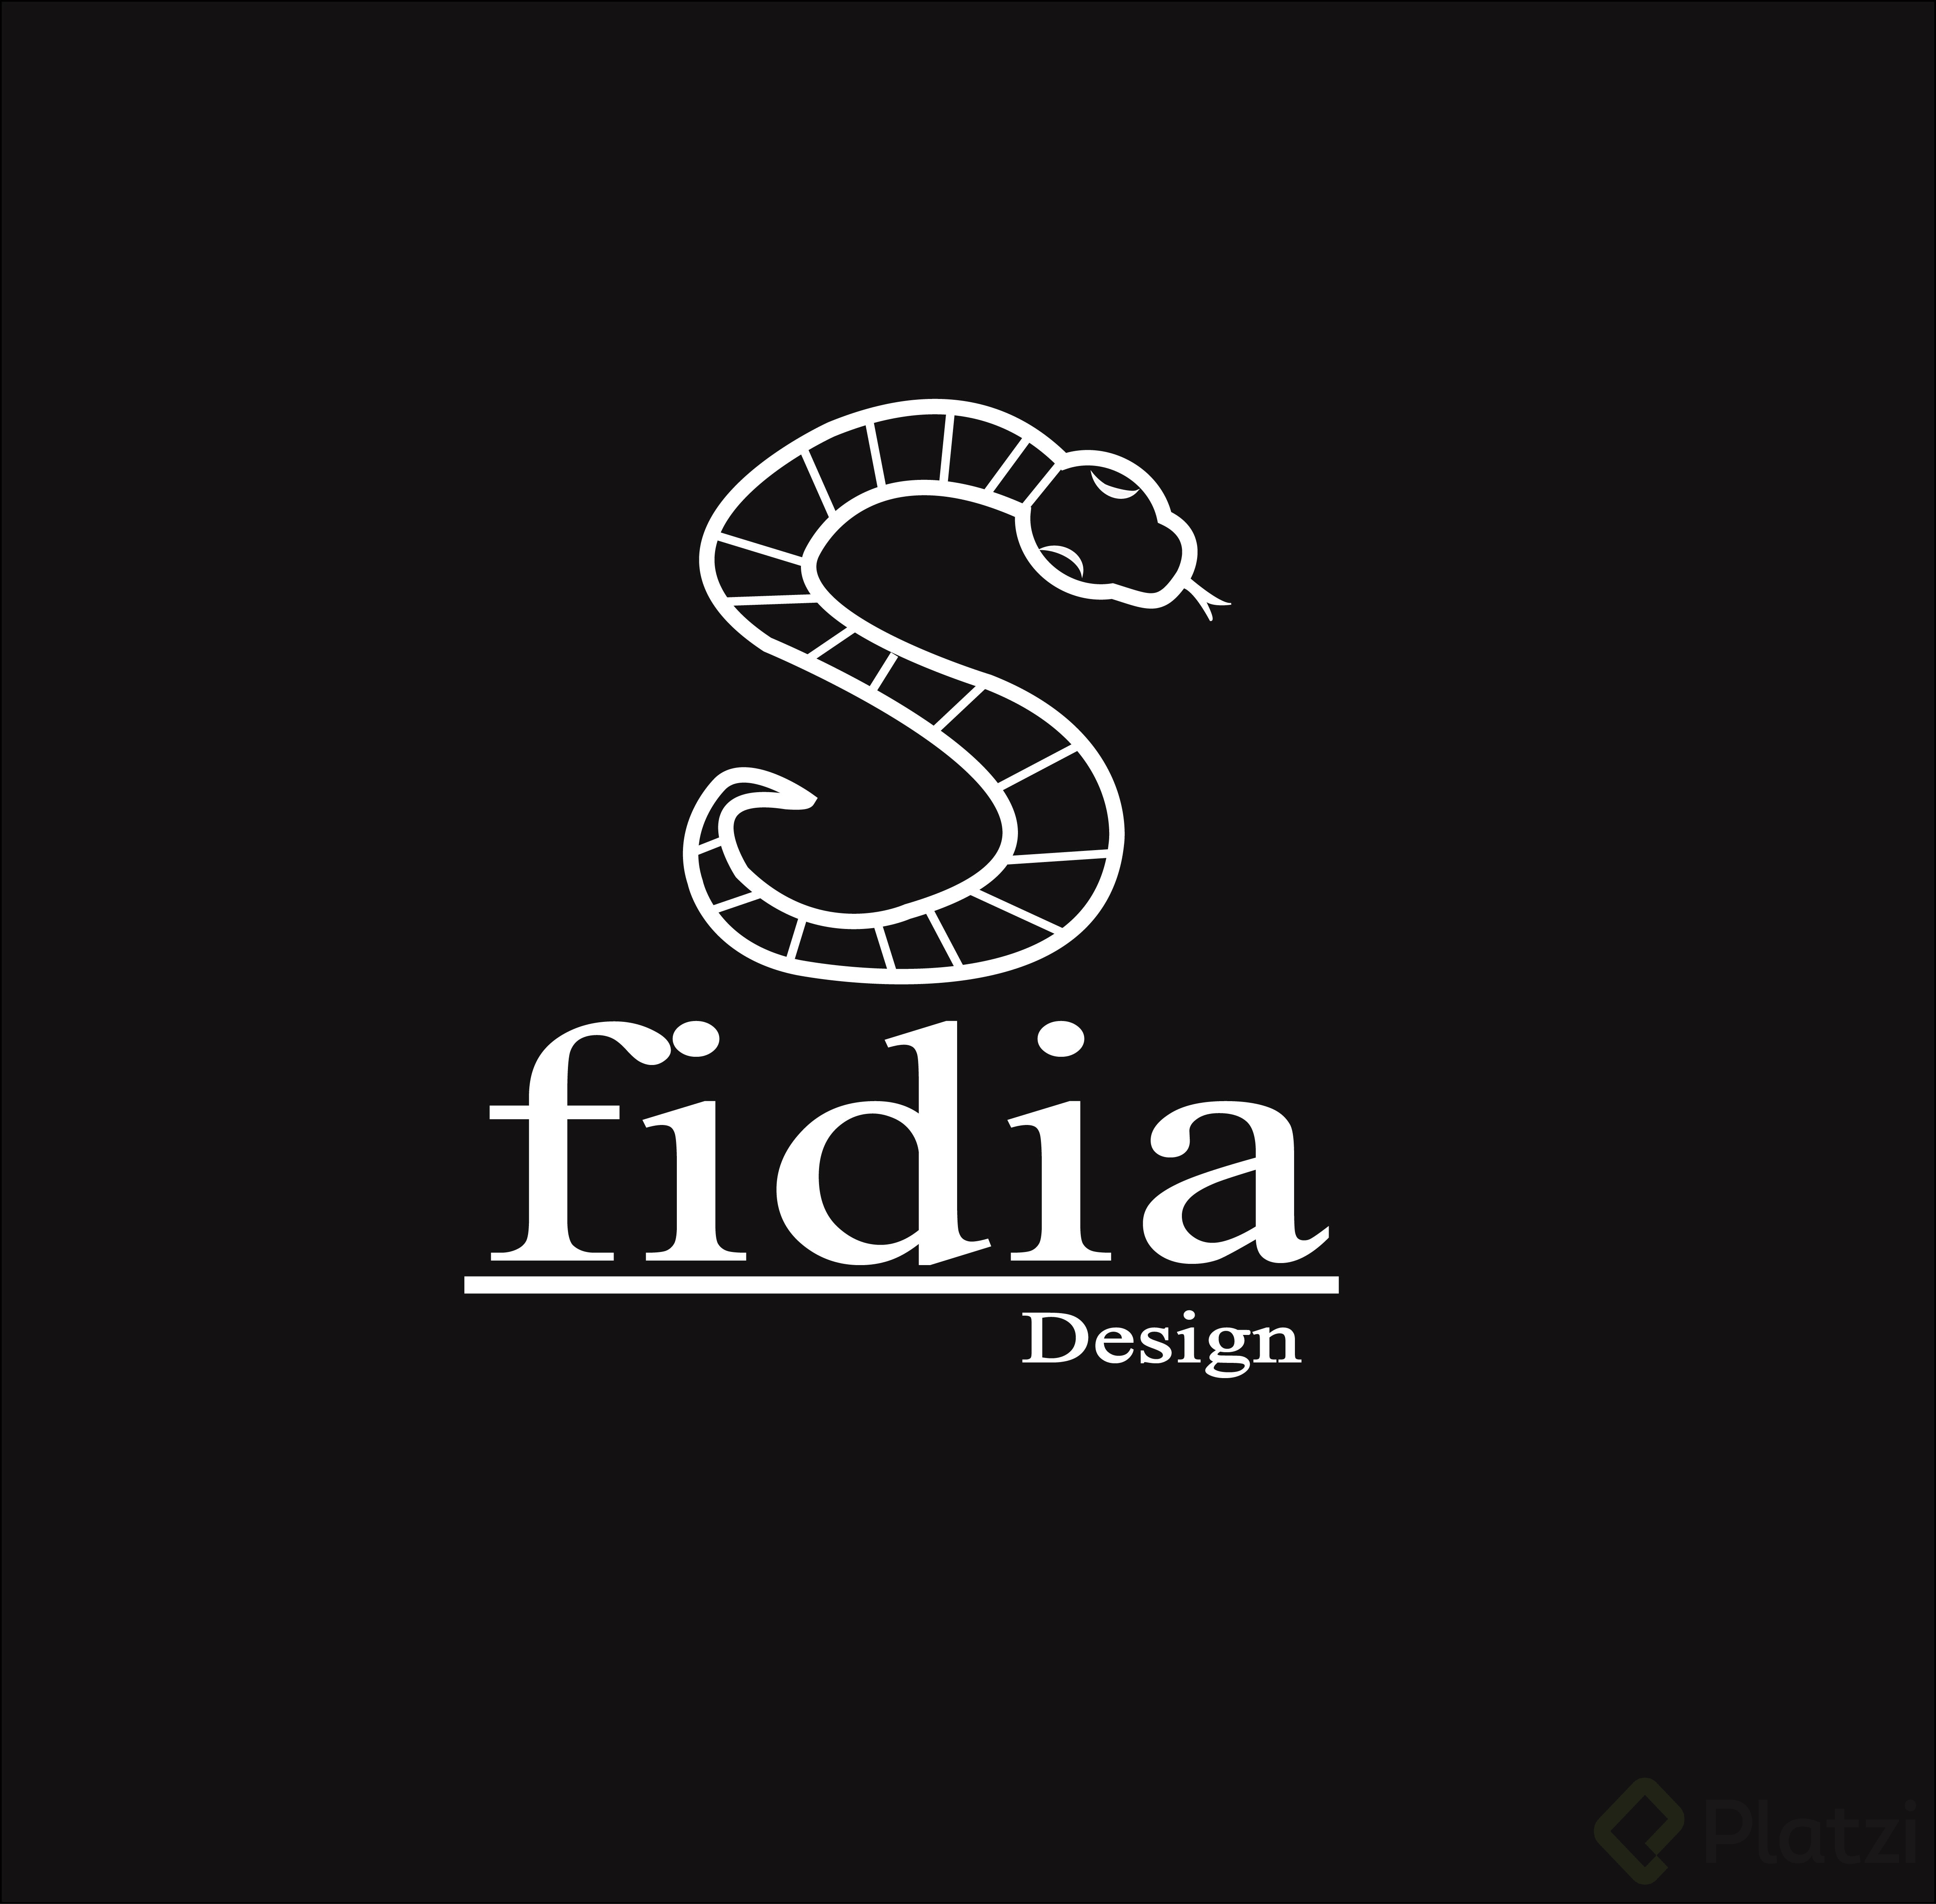 Fidia_logo Black.jpg